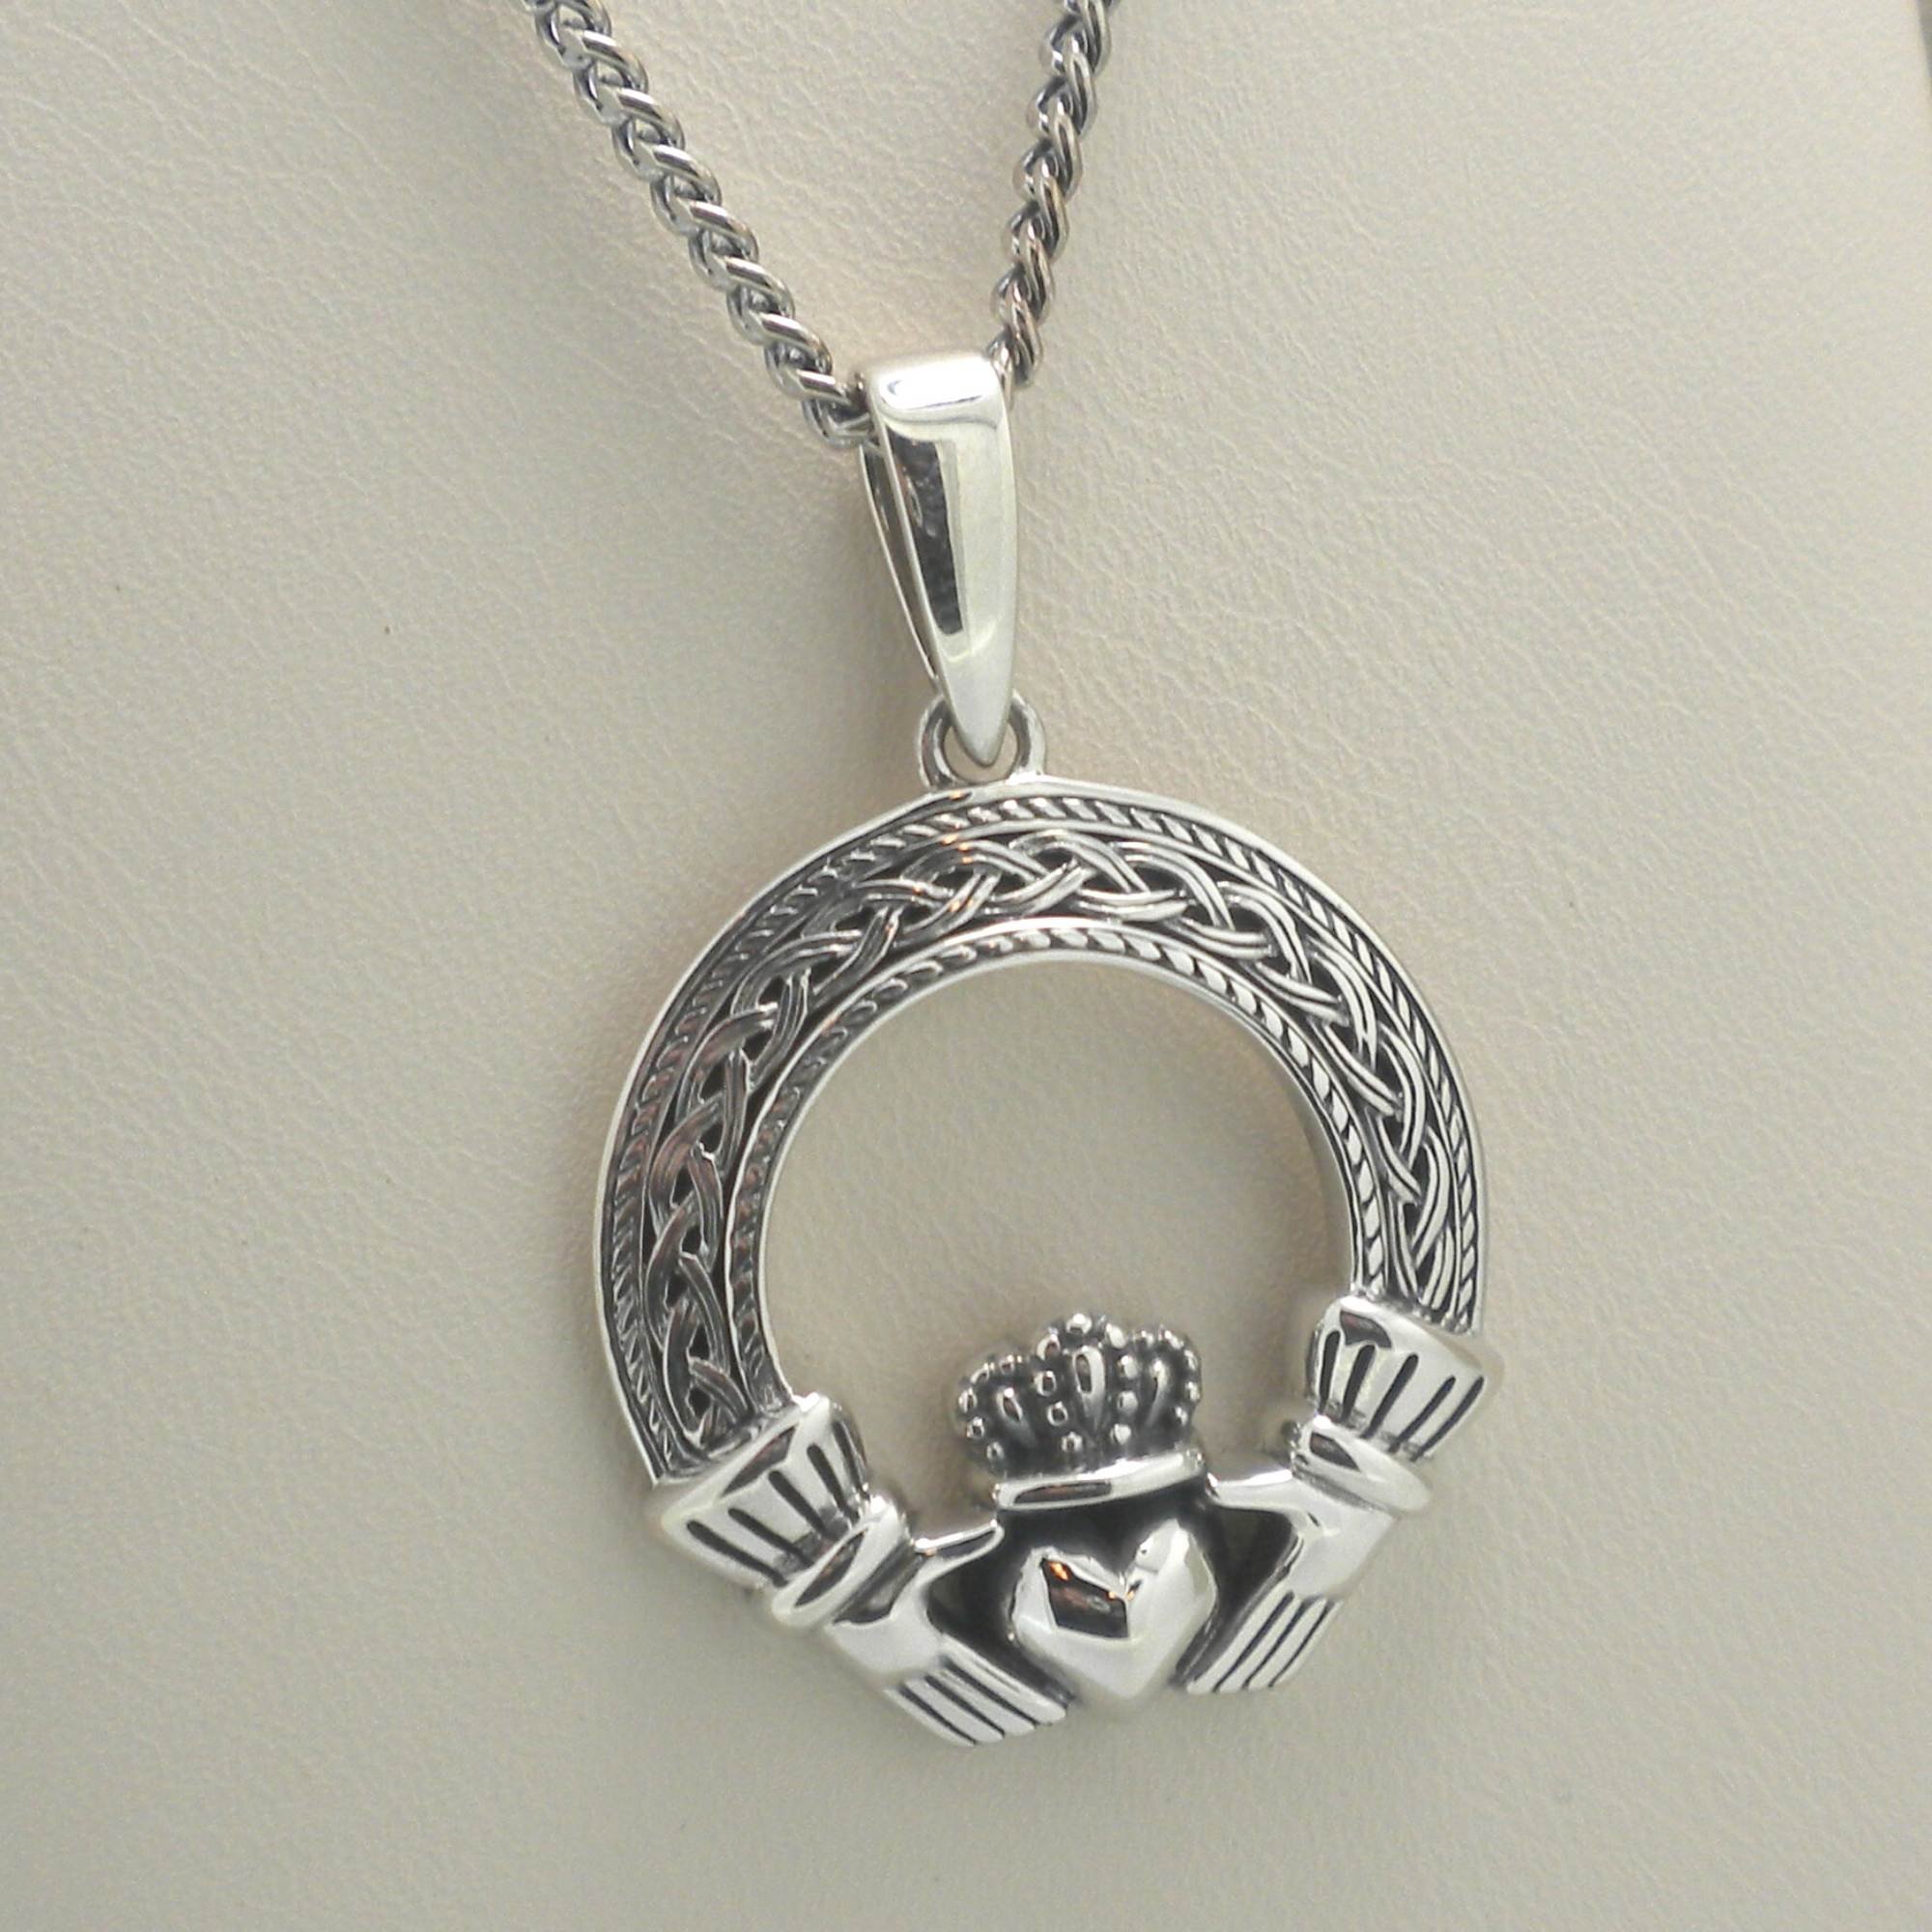 Antique Silver Celtic Knot Pendant Necklace, Trinity Knot Pendant, Celtic  Knot Jewelry, Celtic Knot Necklace, Men's Necklace, Woman Necklace